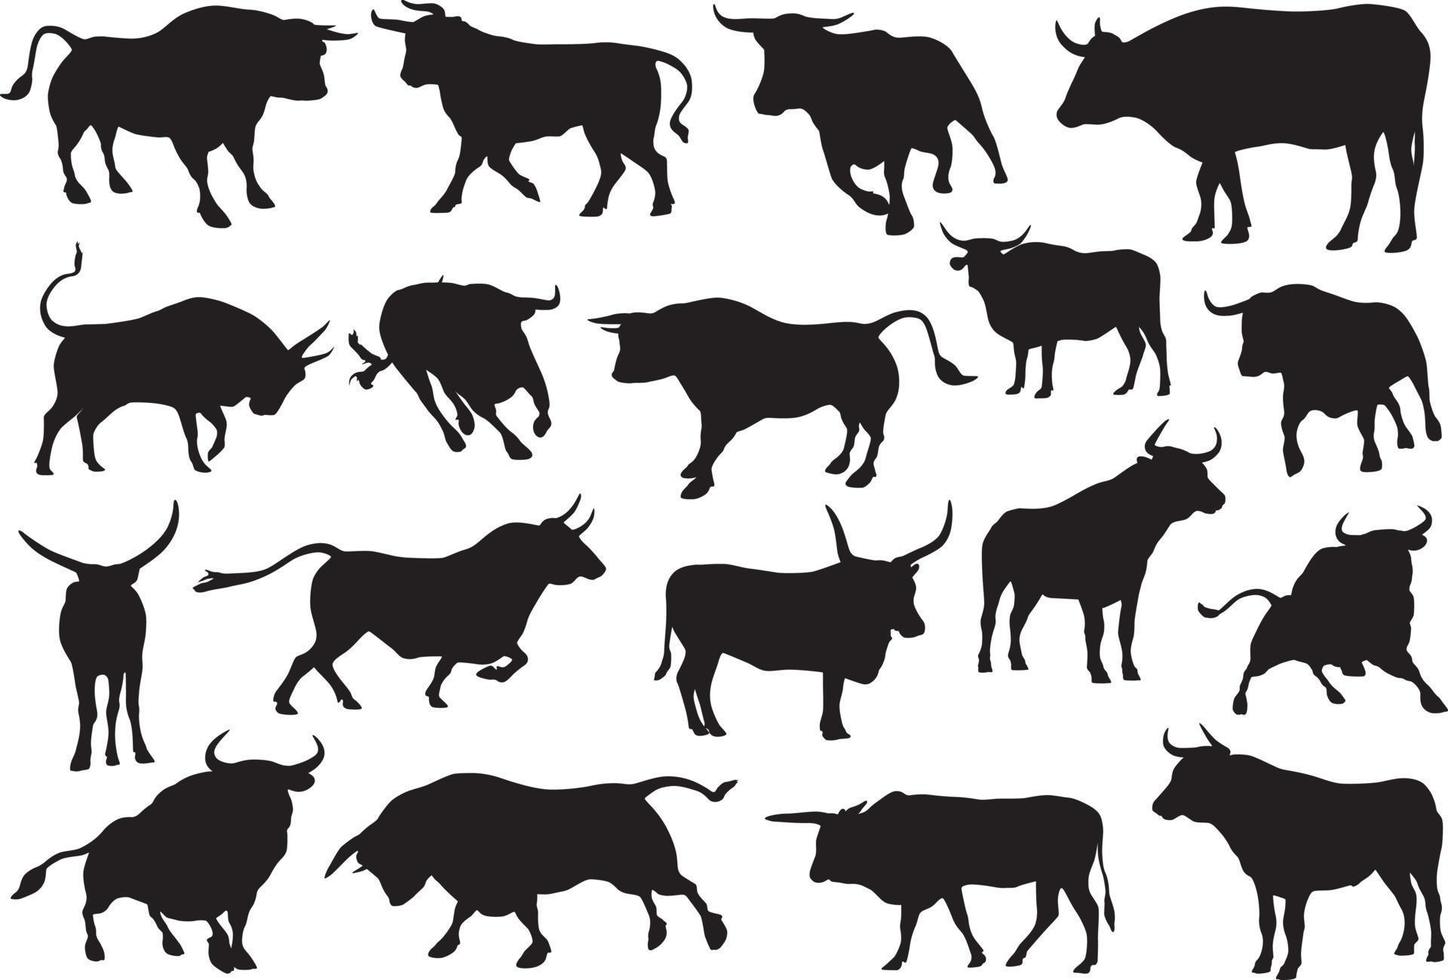 bull silhouette set vector